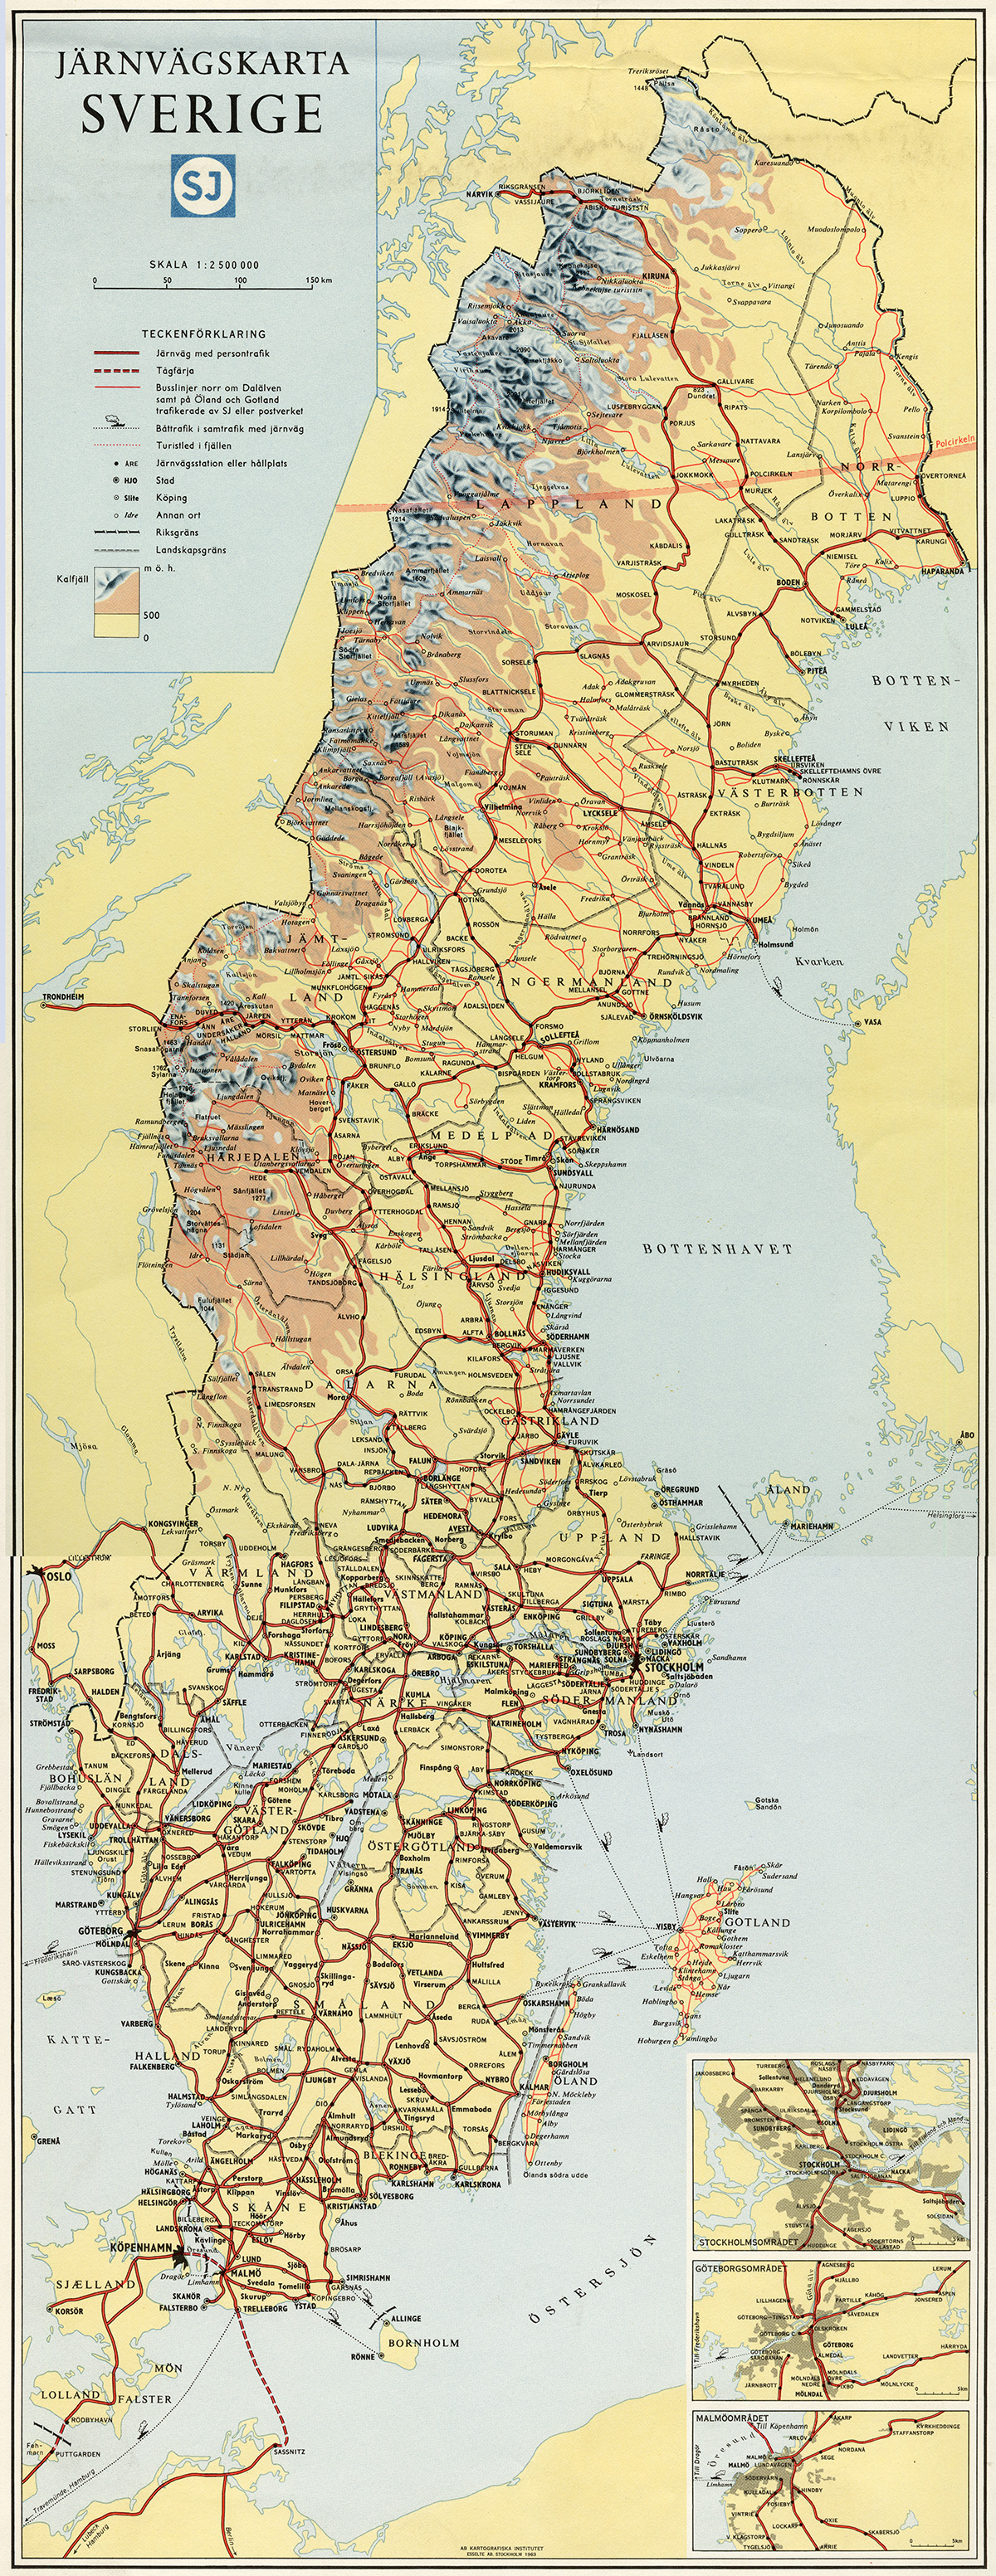 Jrnvgskarta Sverige utvisande jrnvgsntet samt busslinjer